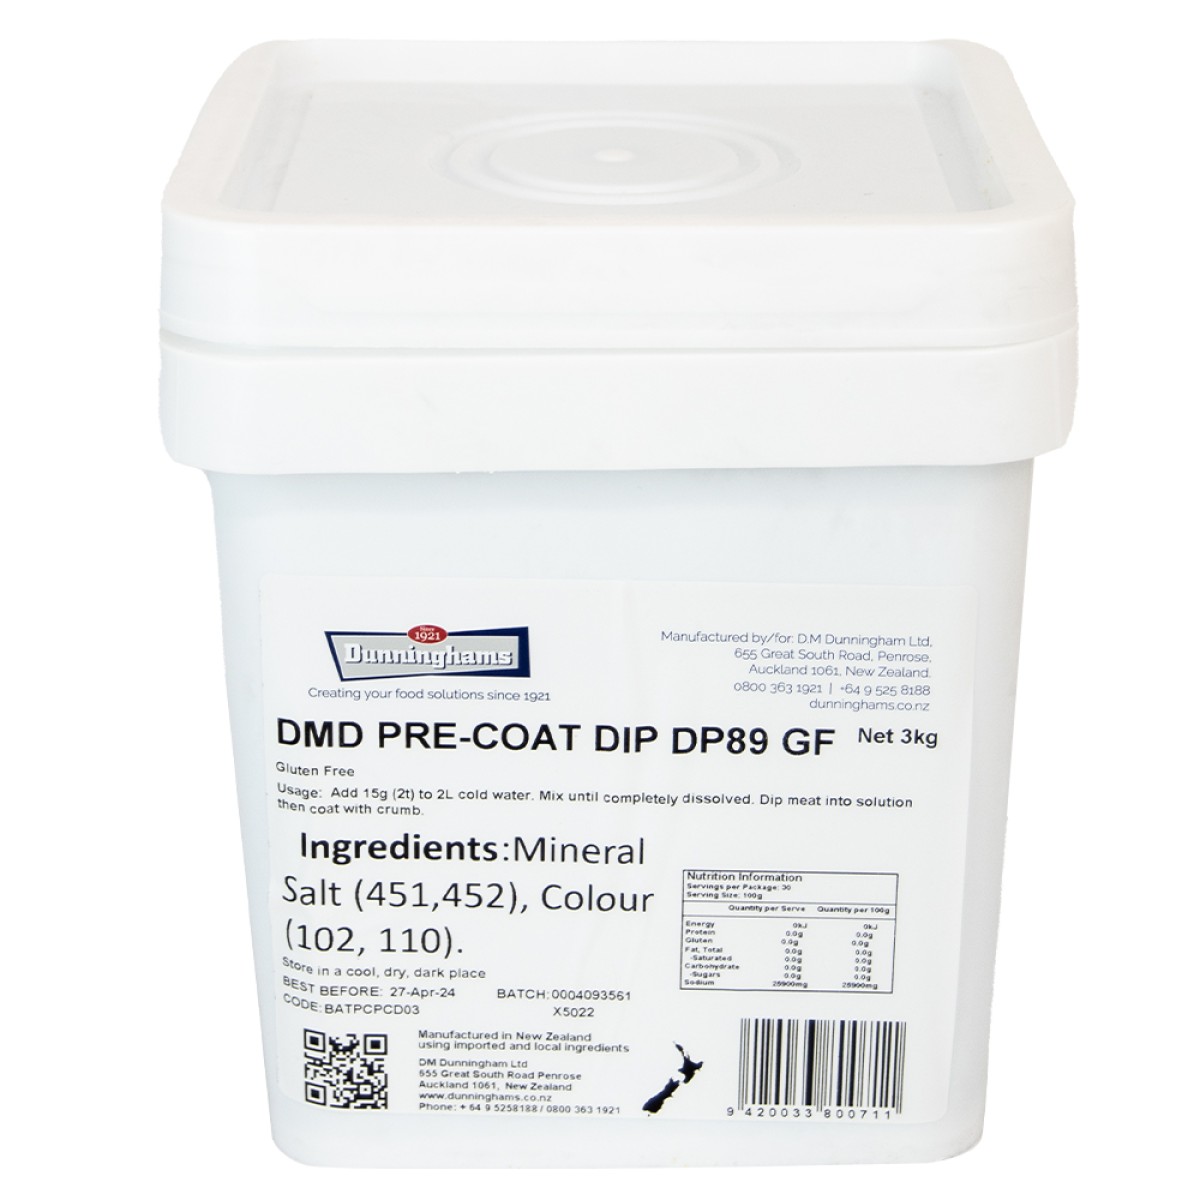 DMD PRE-COAT DIP DP89 GF 3kg